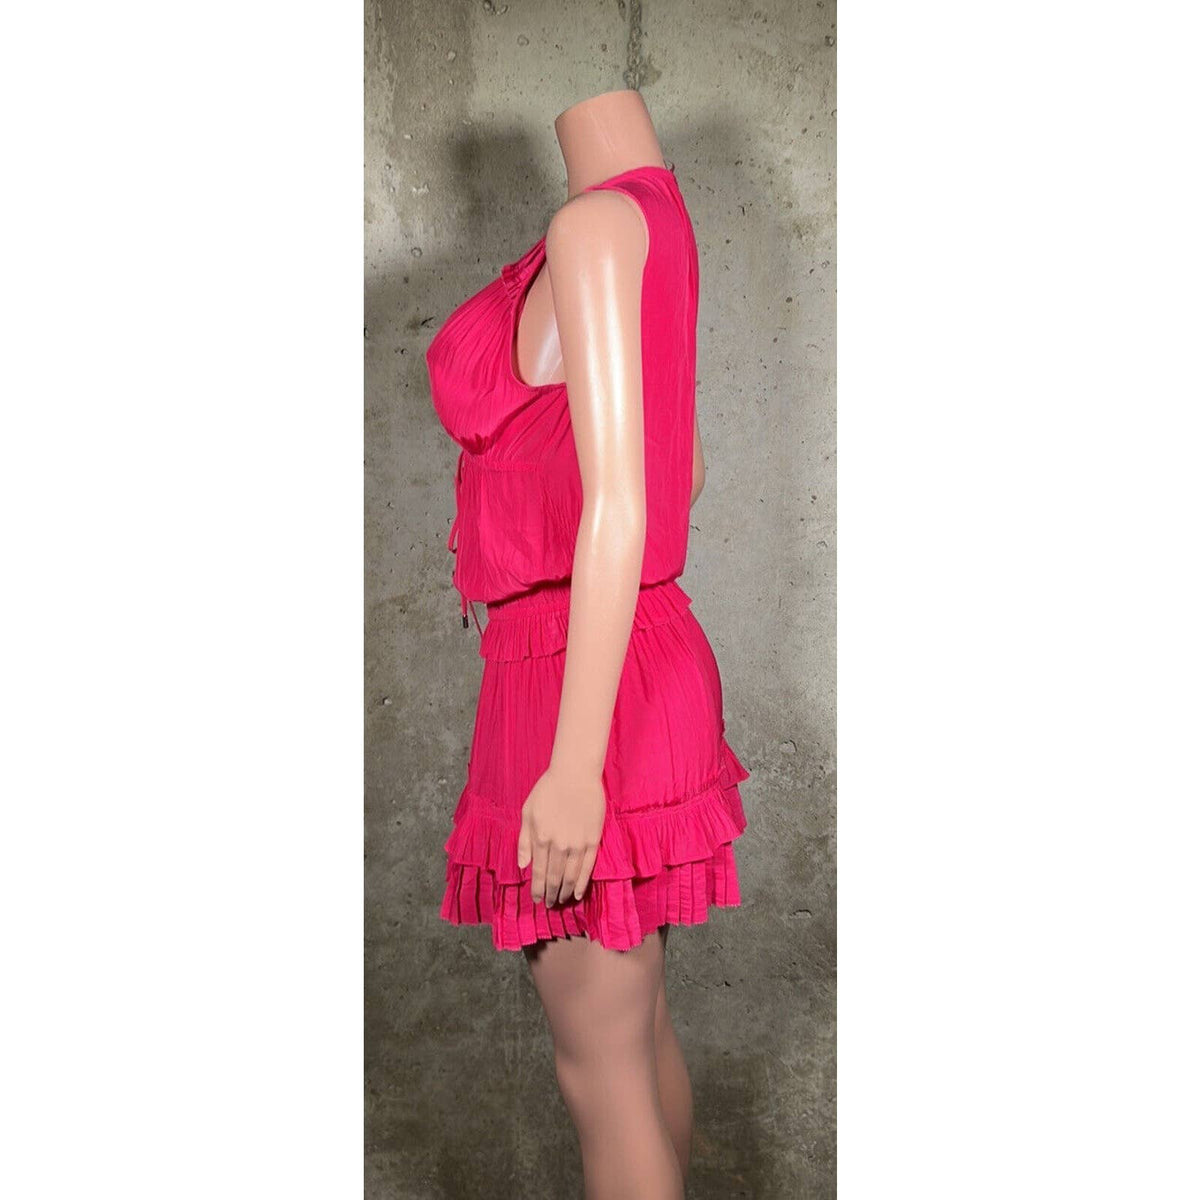 Ramy Brook Pink Ruffle Dress Sz. XS